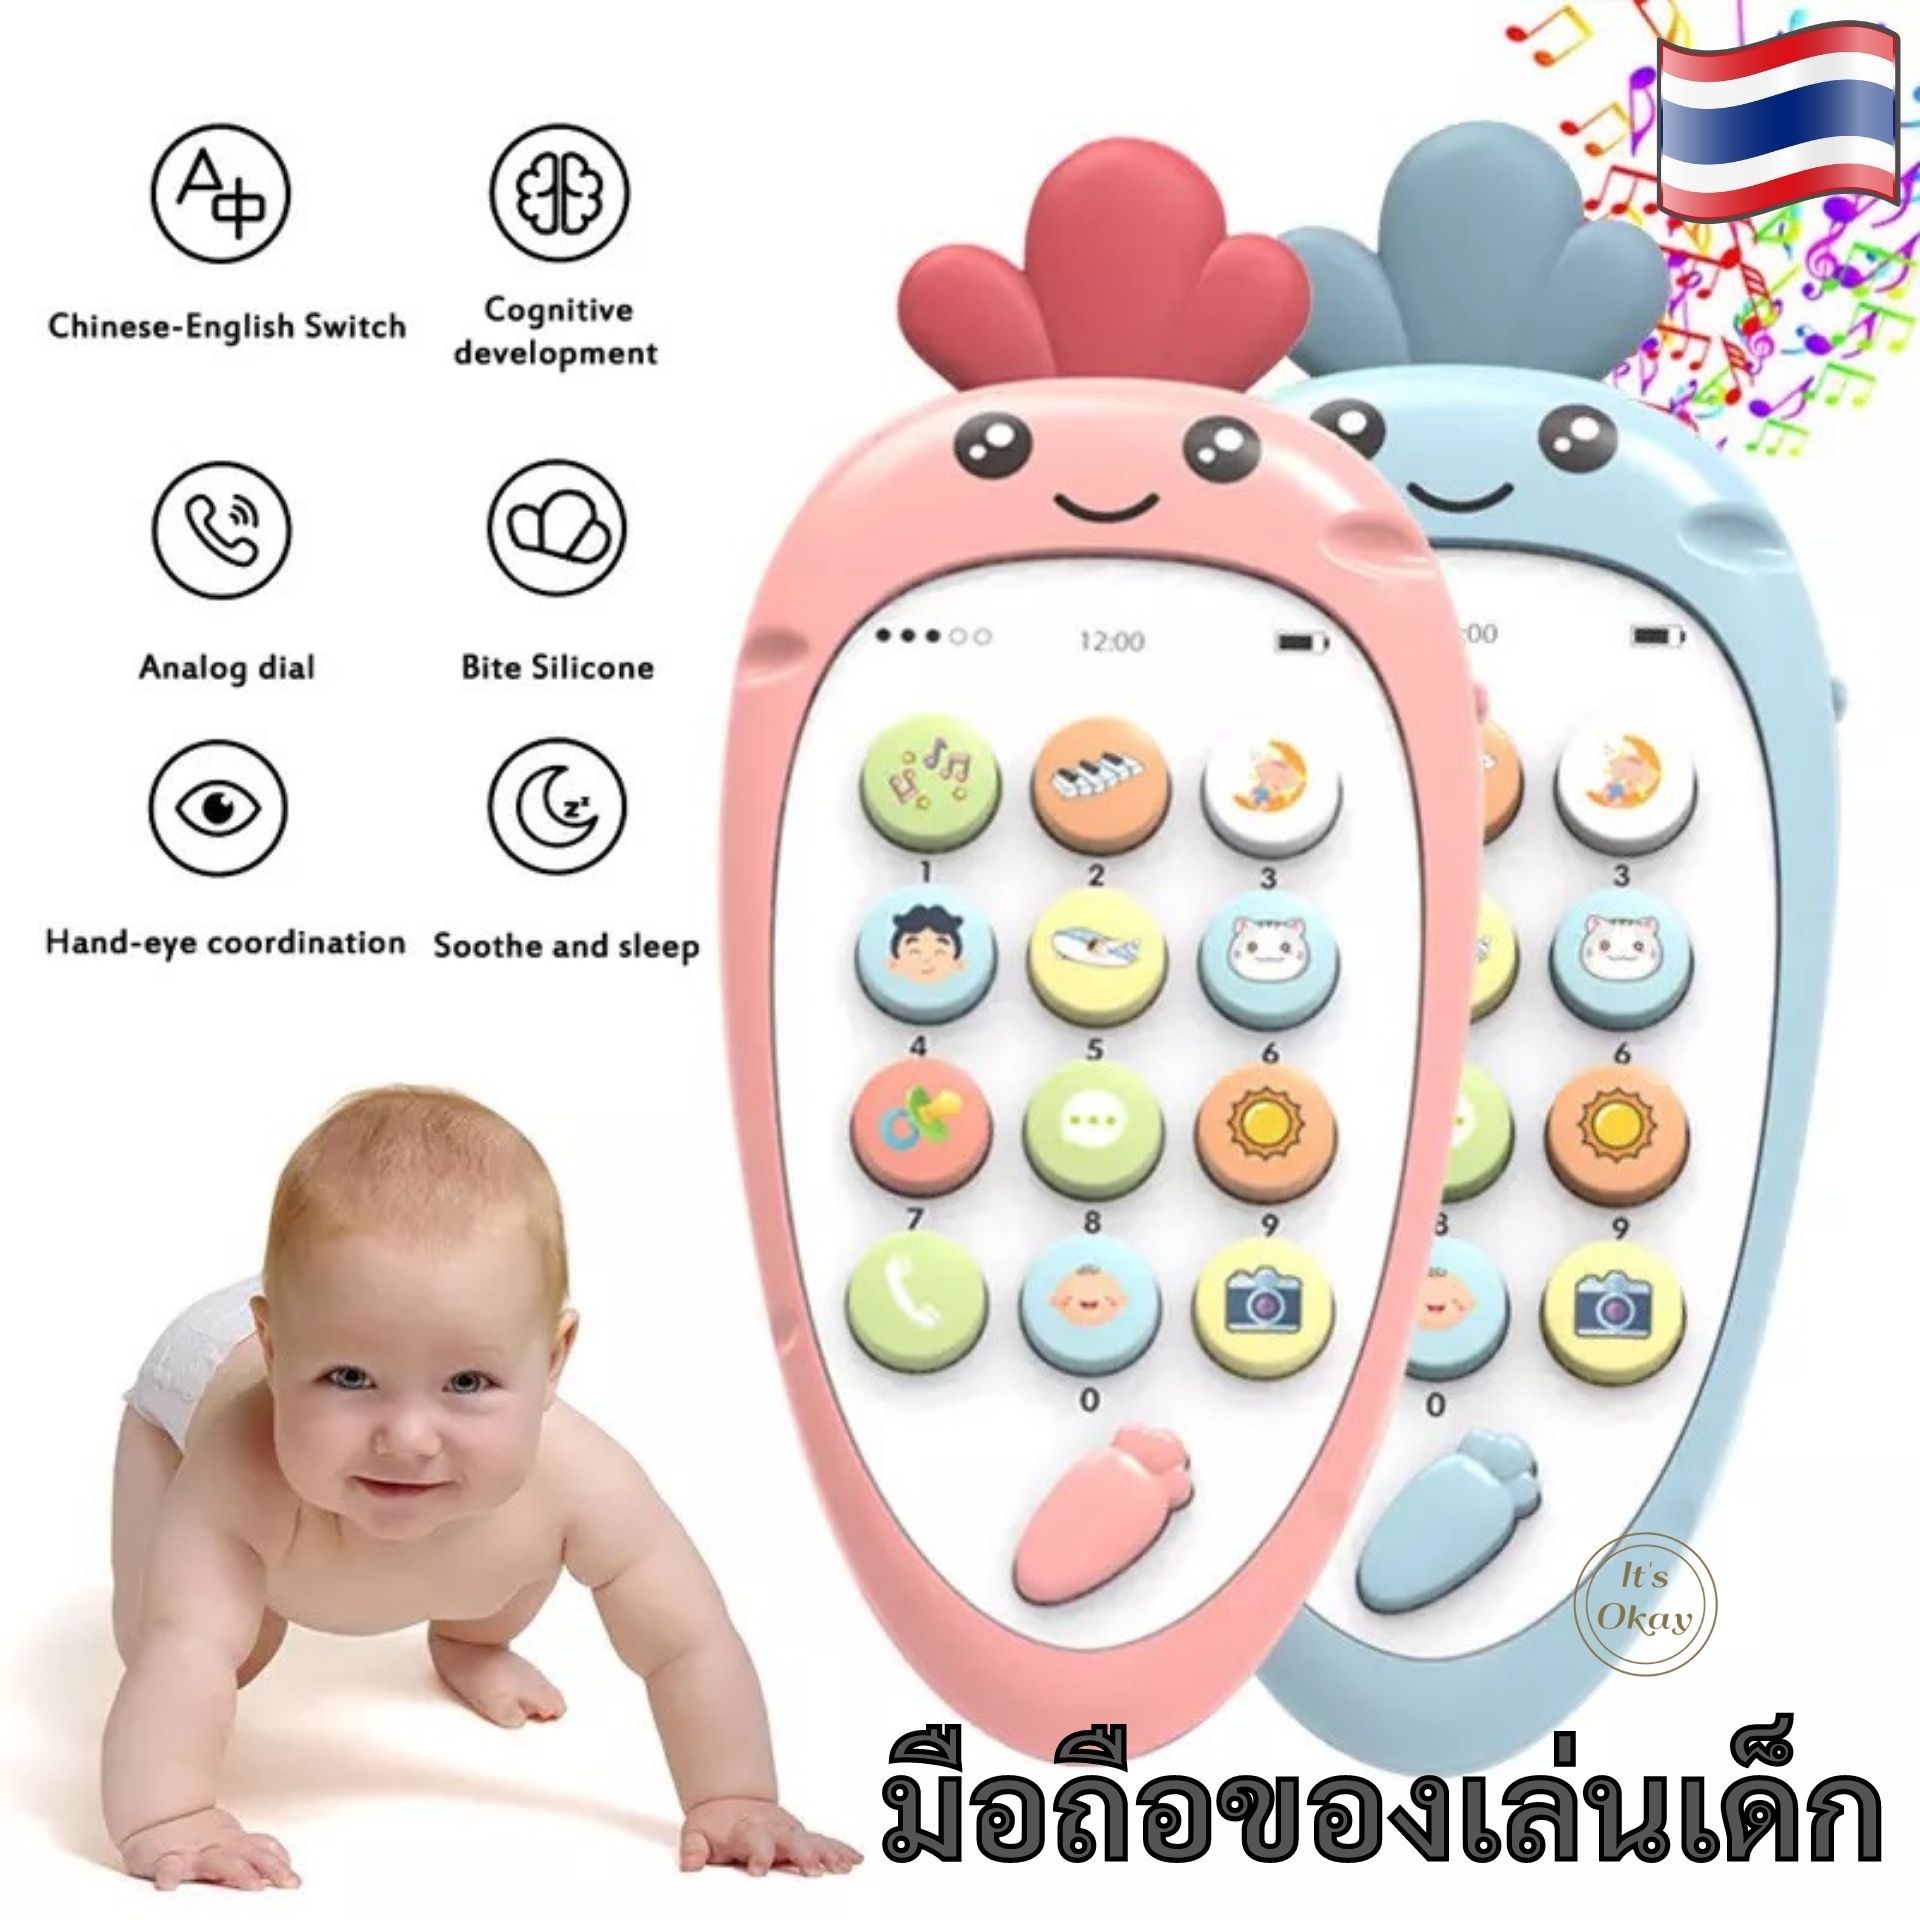 🌈มือถือของเล่นเด็ก โทรศัพท์มือถือของเล่นเด็ก (ไม่แถมถ่าน) มีโหมดเรียนรู้ 2 ภาษา จีน-อังกฤษ โทรศัพท์เด็ก ของเล่นเด็ก Baby toy OK123